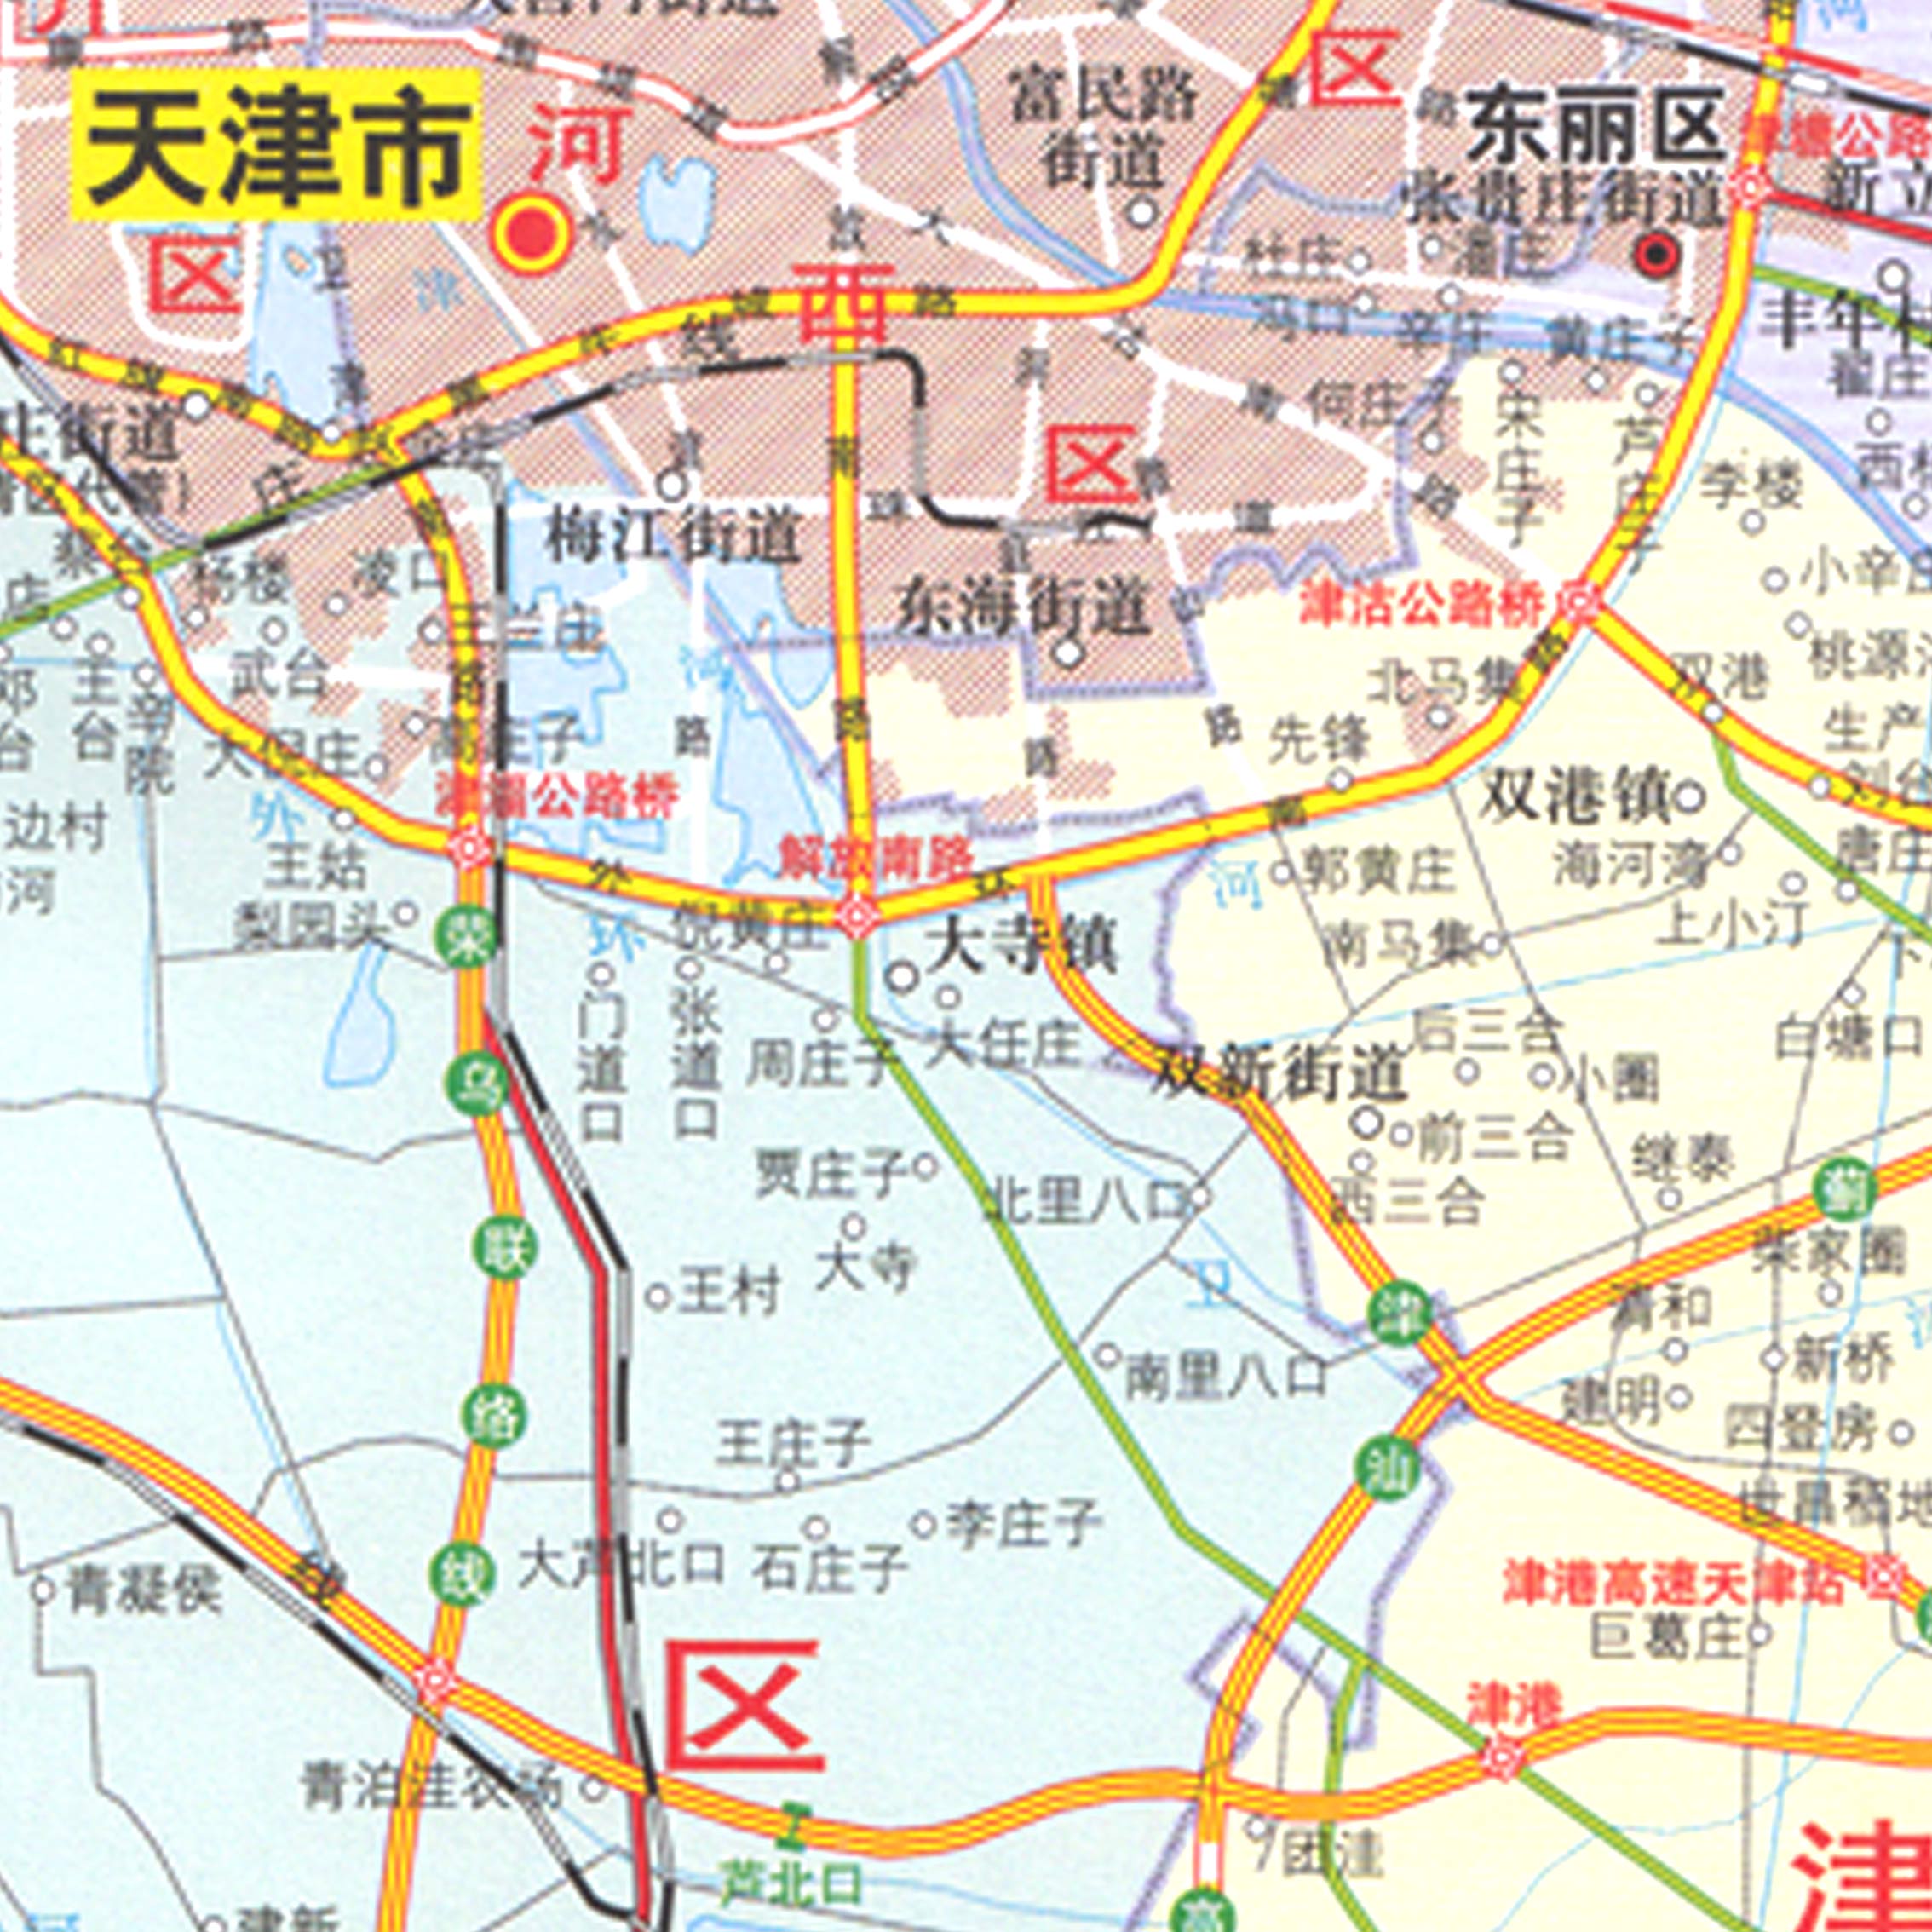 天津市地图2017全新版天津交通旅游图 超大地图贴图74